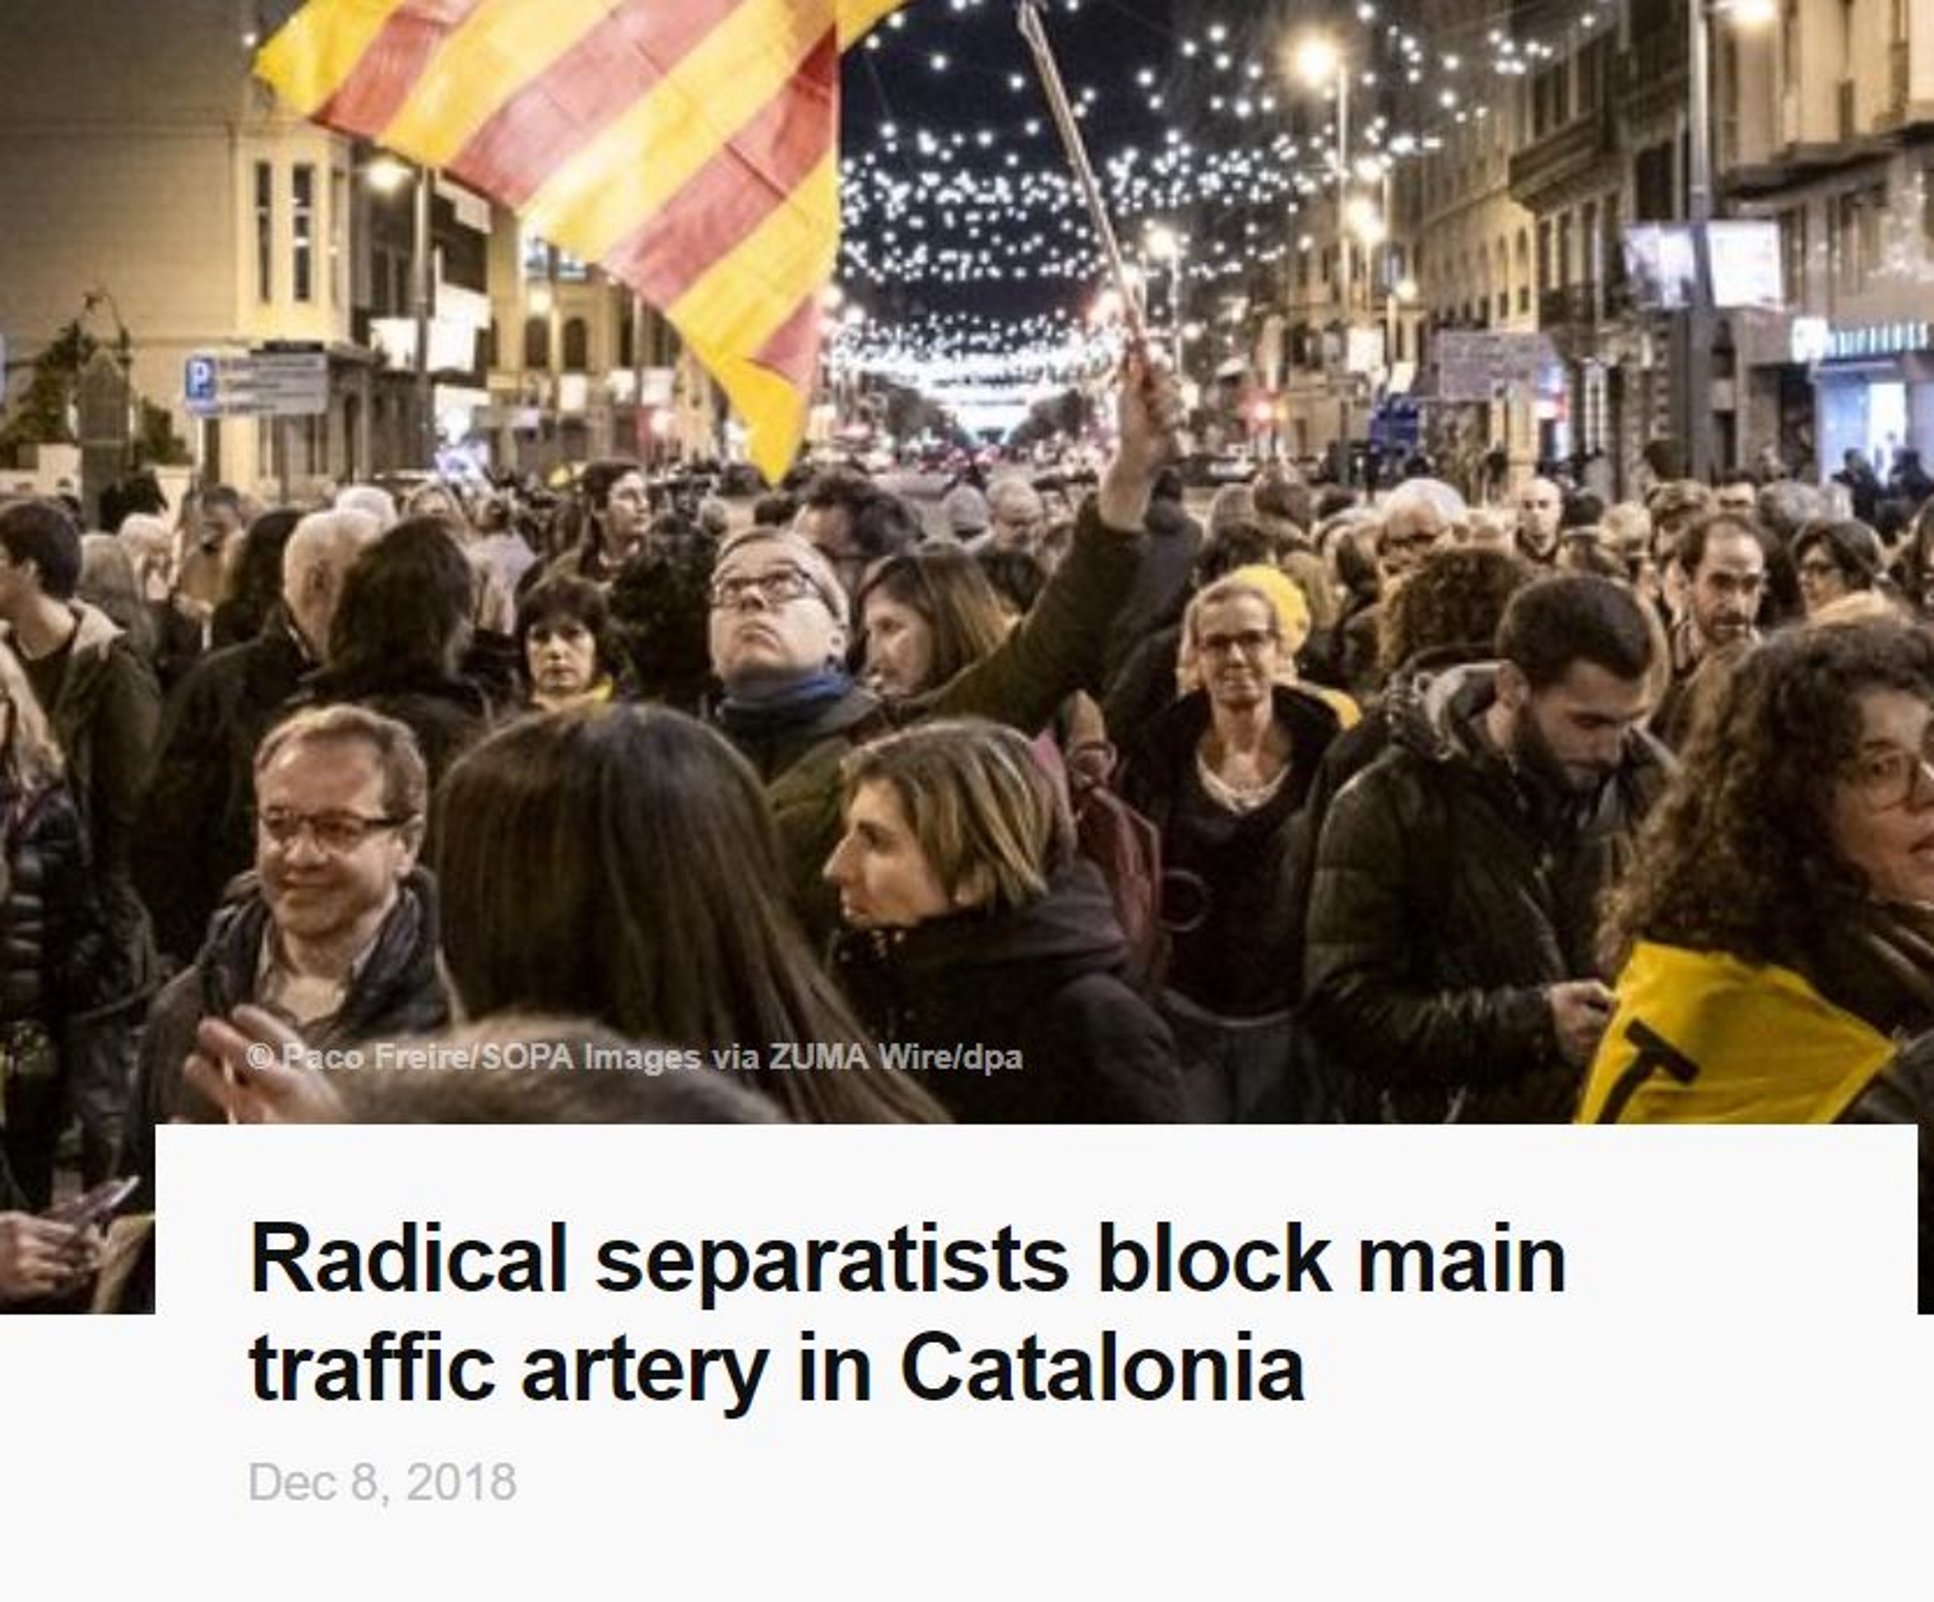 La agencia de prensa alemana: "Los independentistas bloquean la principal arteria de Catalunya"